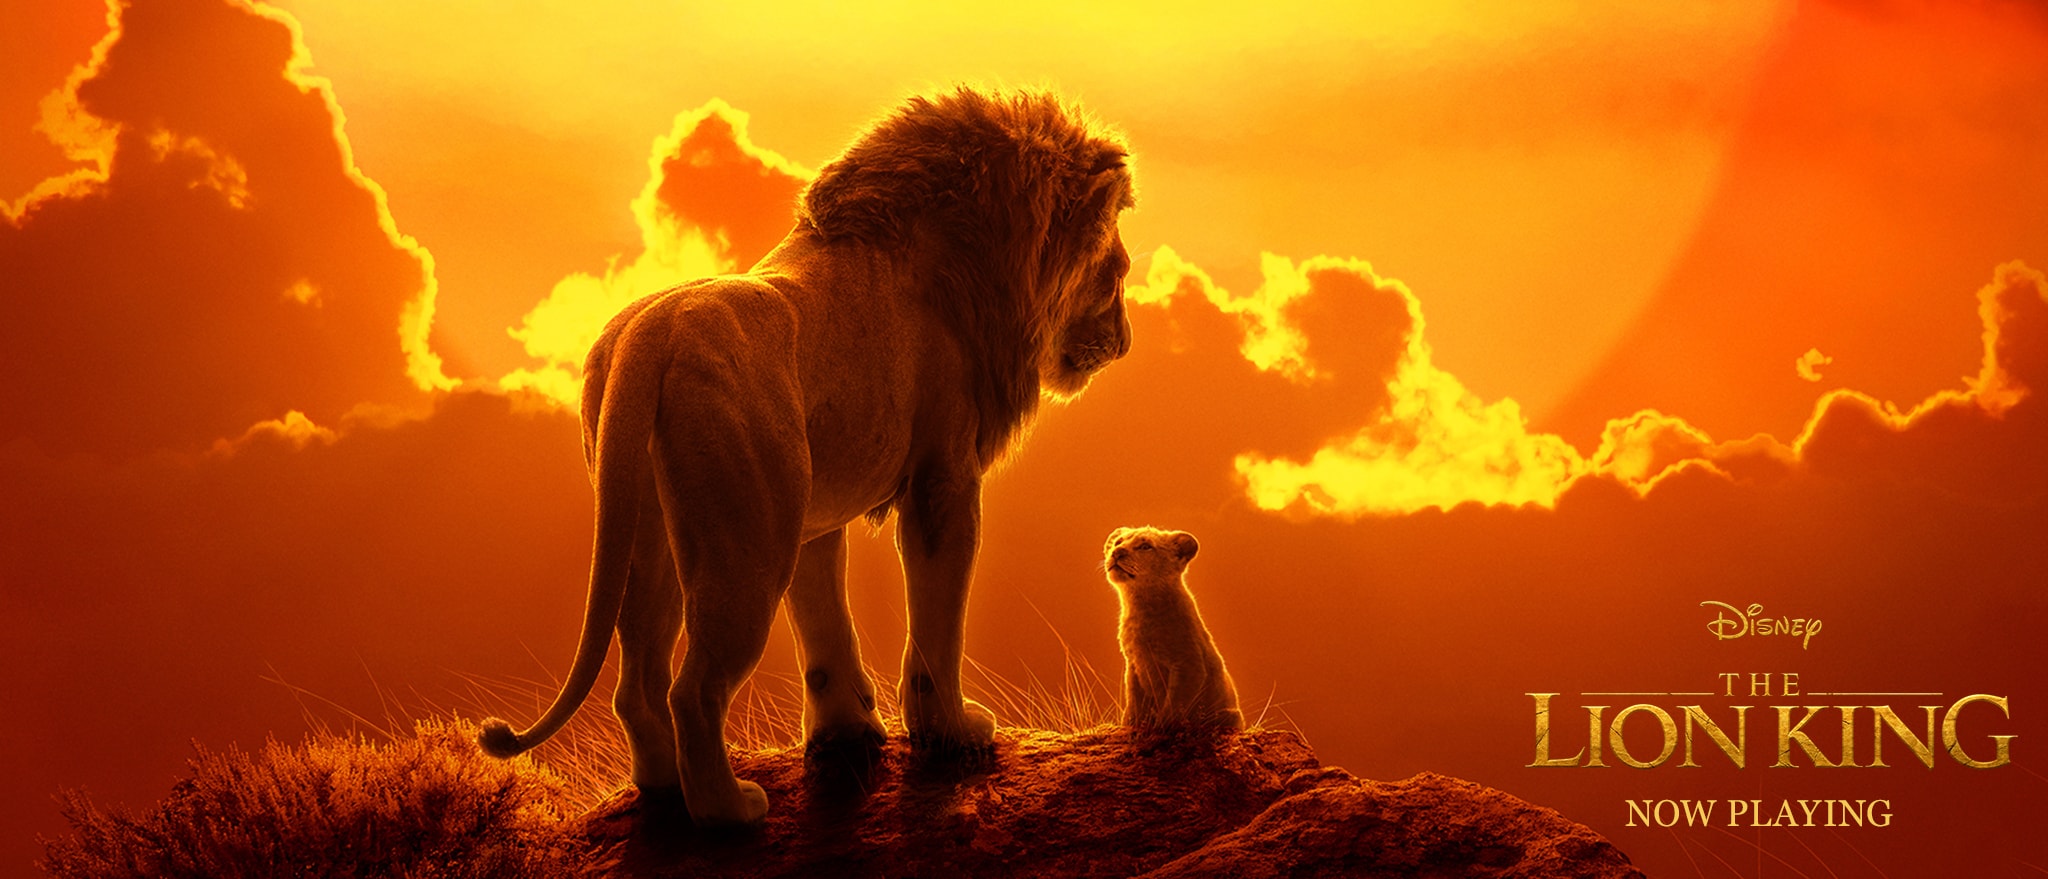 The Lion King, gişedeki macerasına rekorlarla başladı